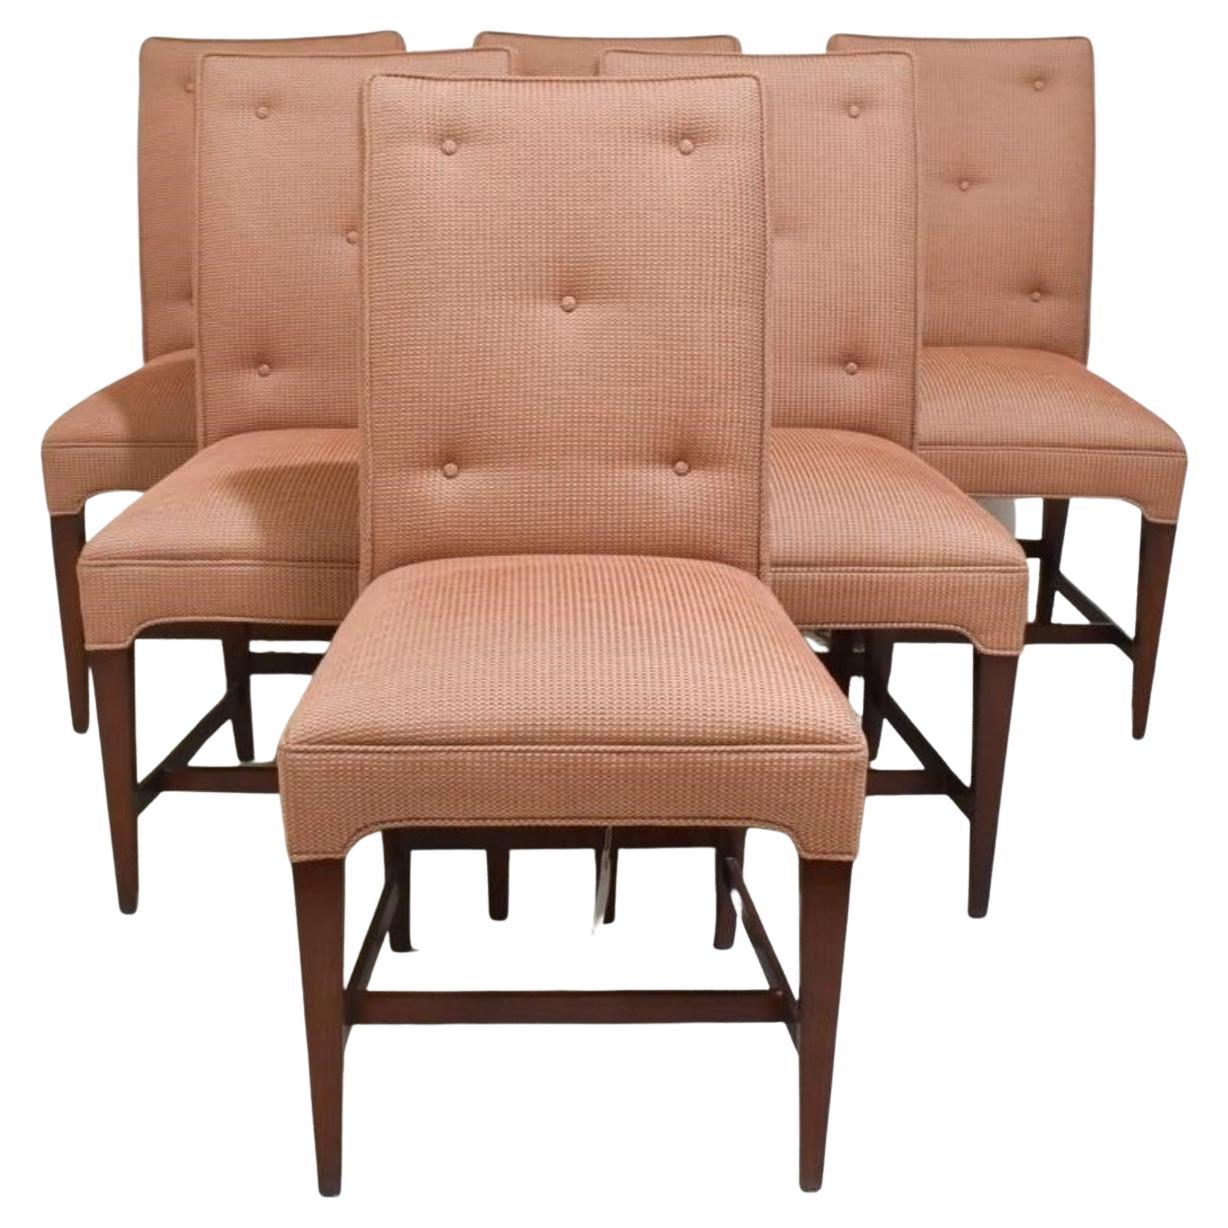 Suite de 6 chaises de salle à manger élégantes de style mi-siècle moderne